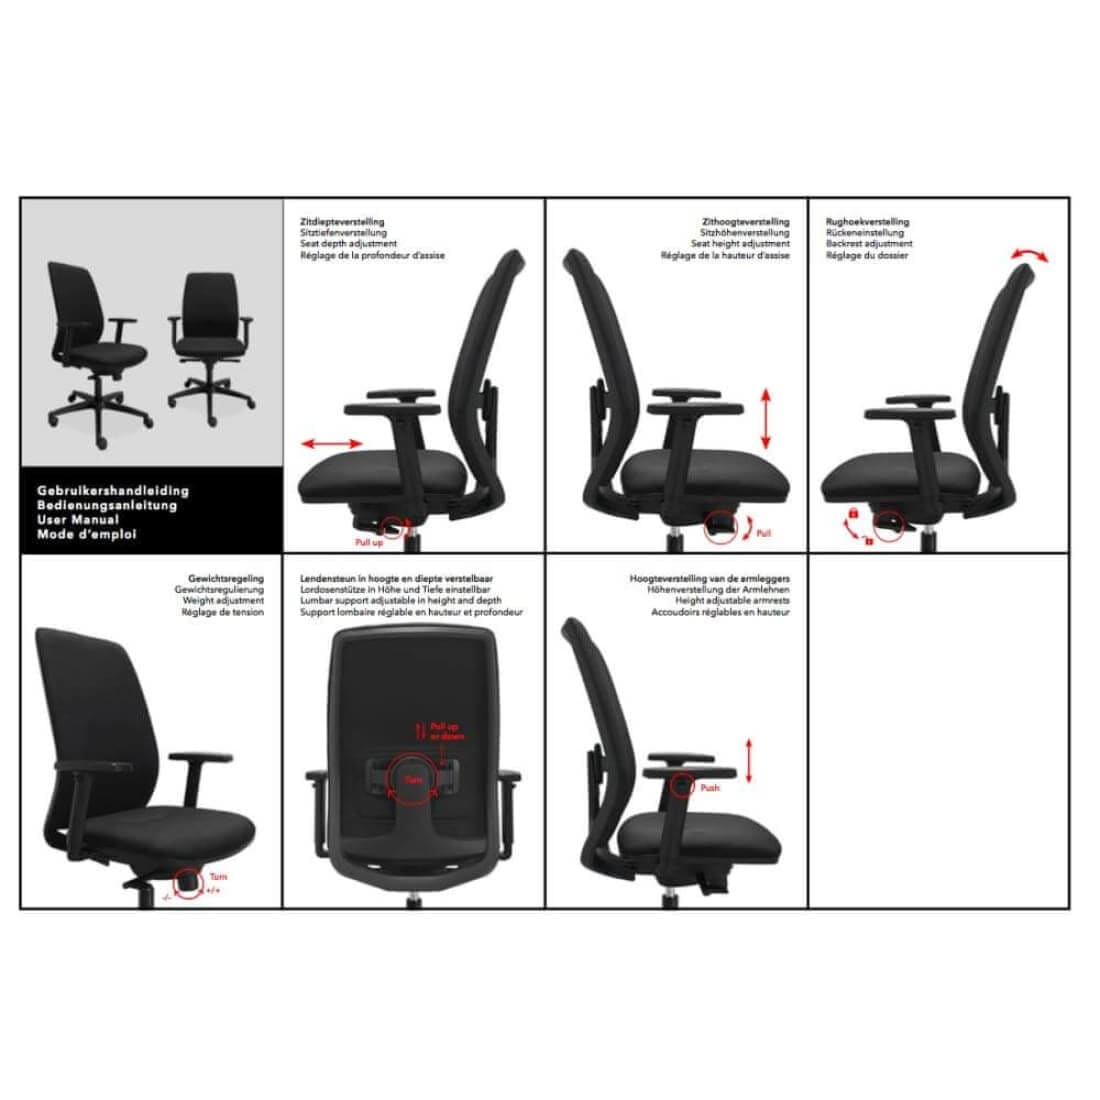 ergonomische-bureaustoel-comfort-de-singel-nen-1335-bureaustoelen-825_10287c11-5bad-4c7f-ac02-ec9336dda438.jpg